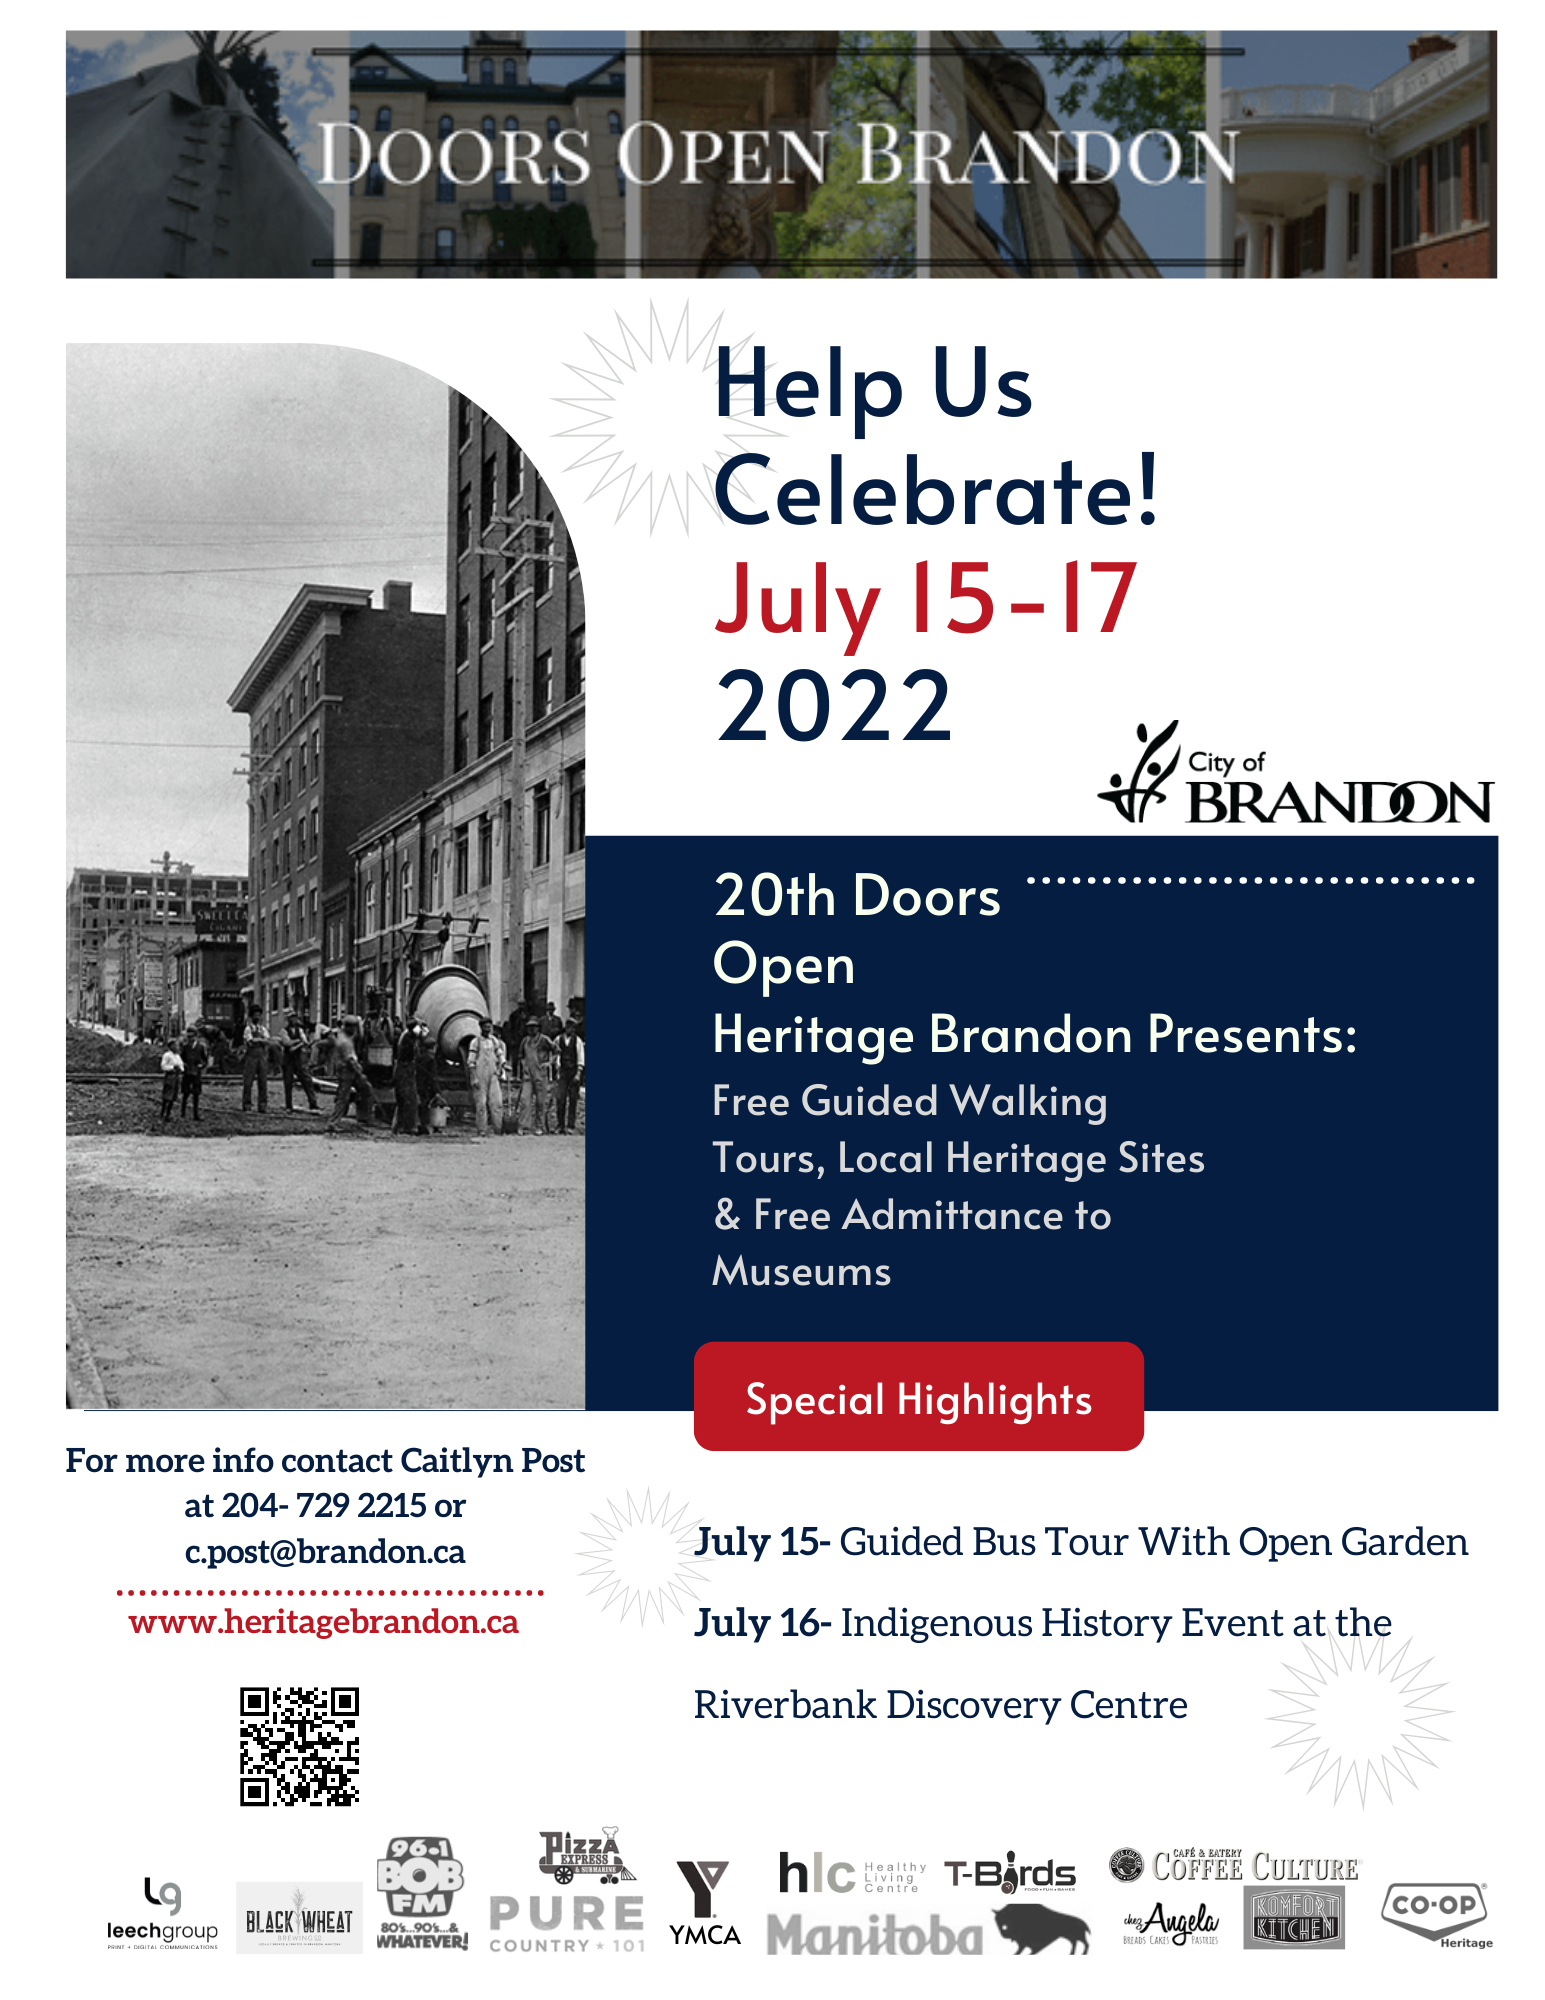 Doors Open Brandon Heritage Event 2022